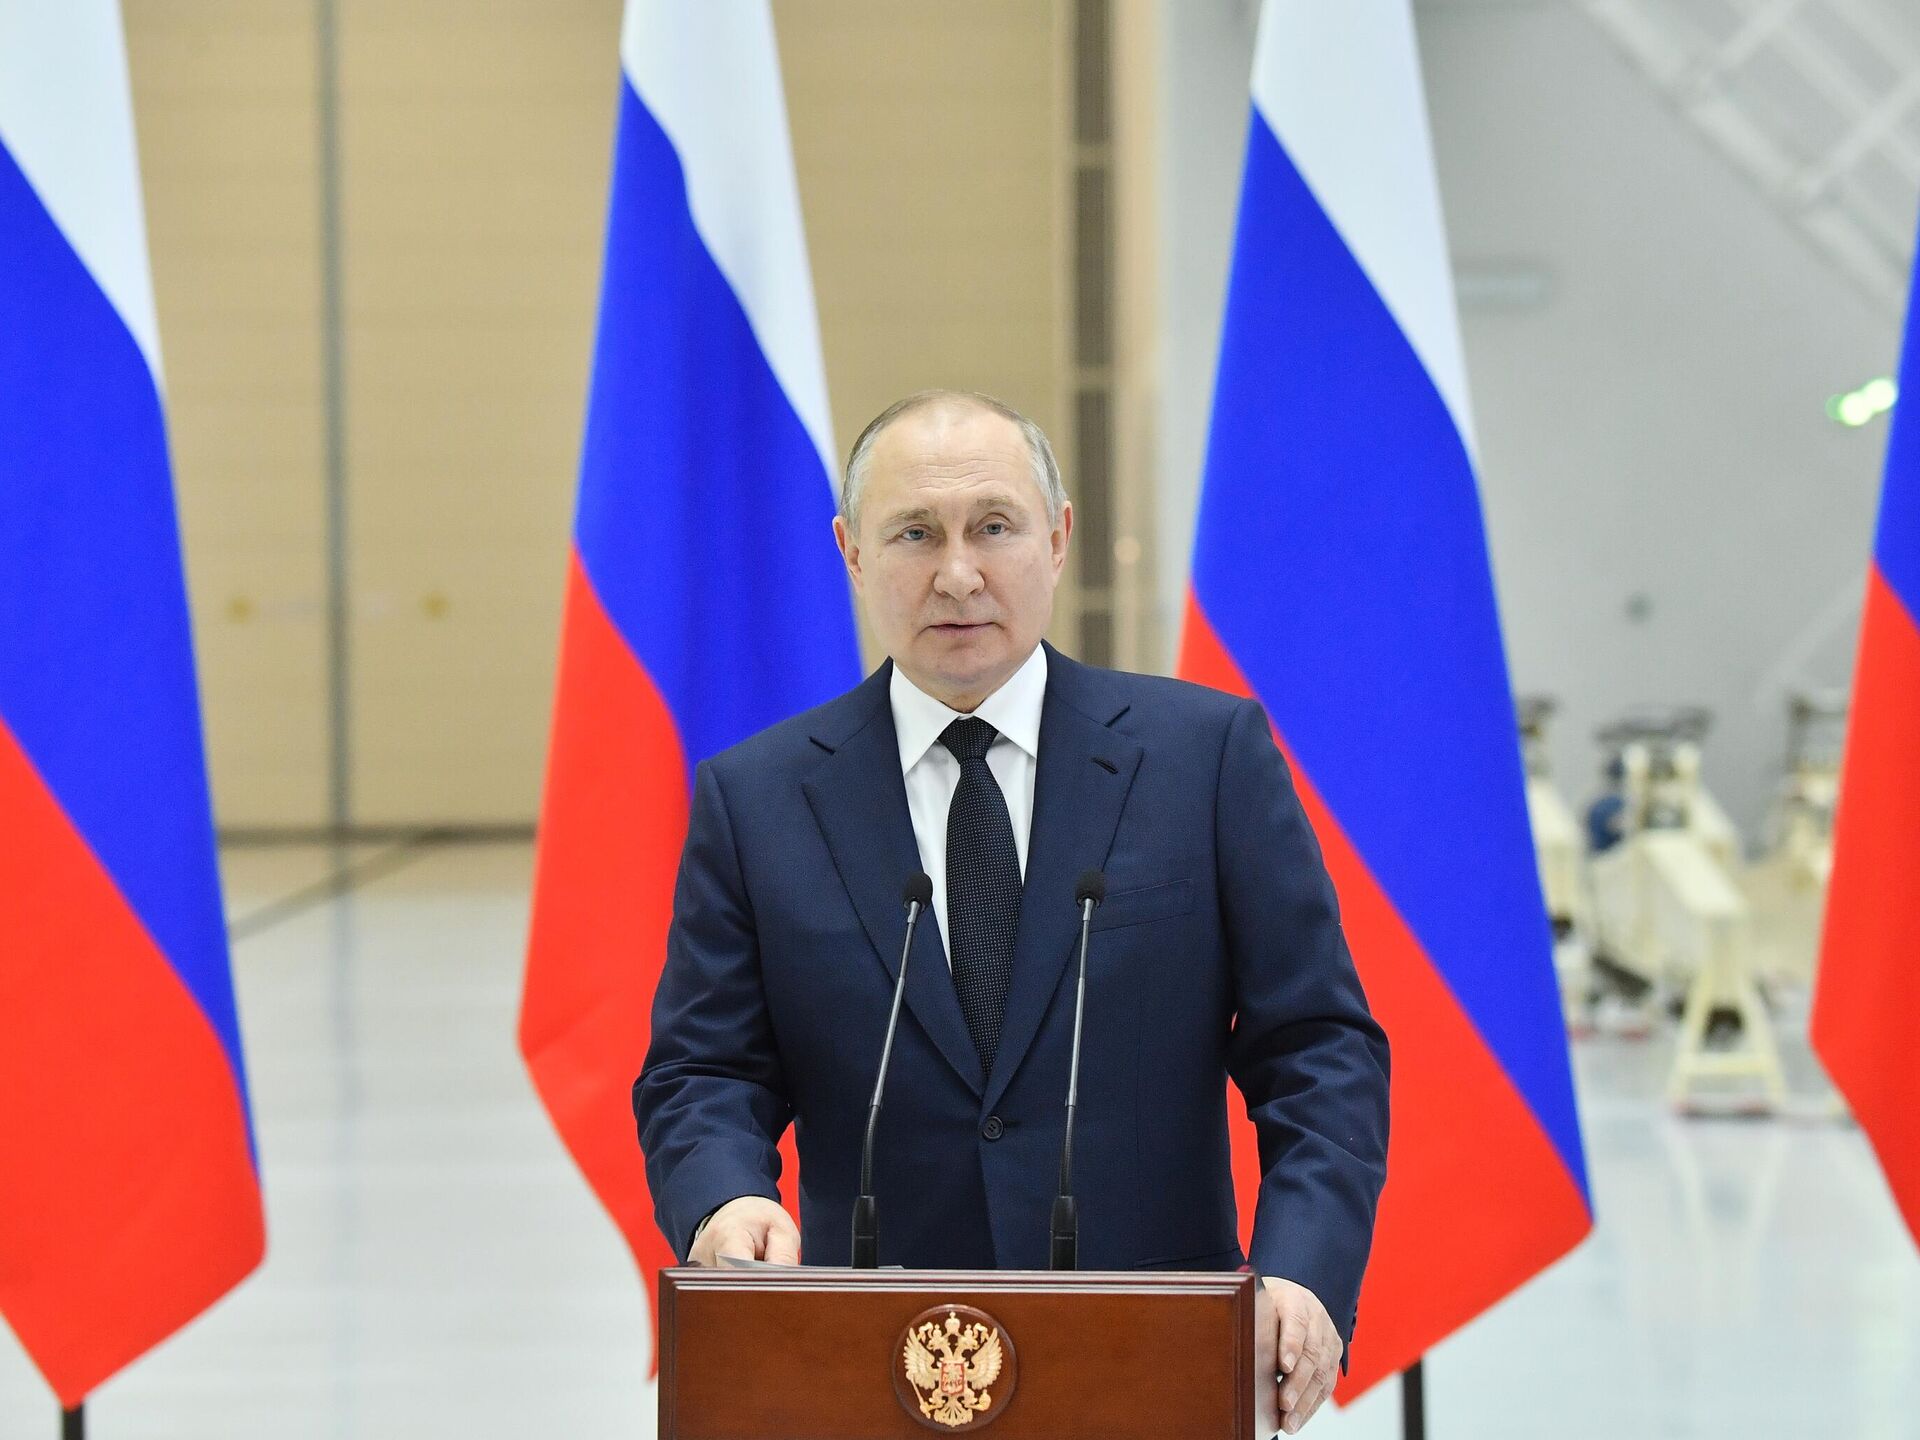 Путин заявил, что санкционный «блицкриг» против России не удался